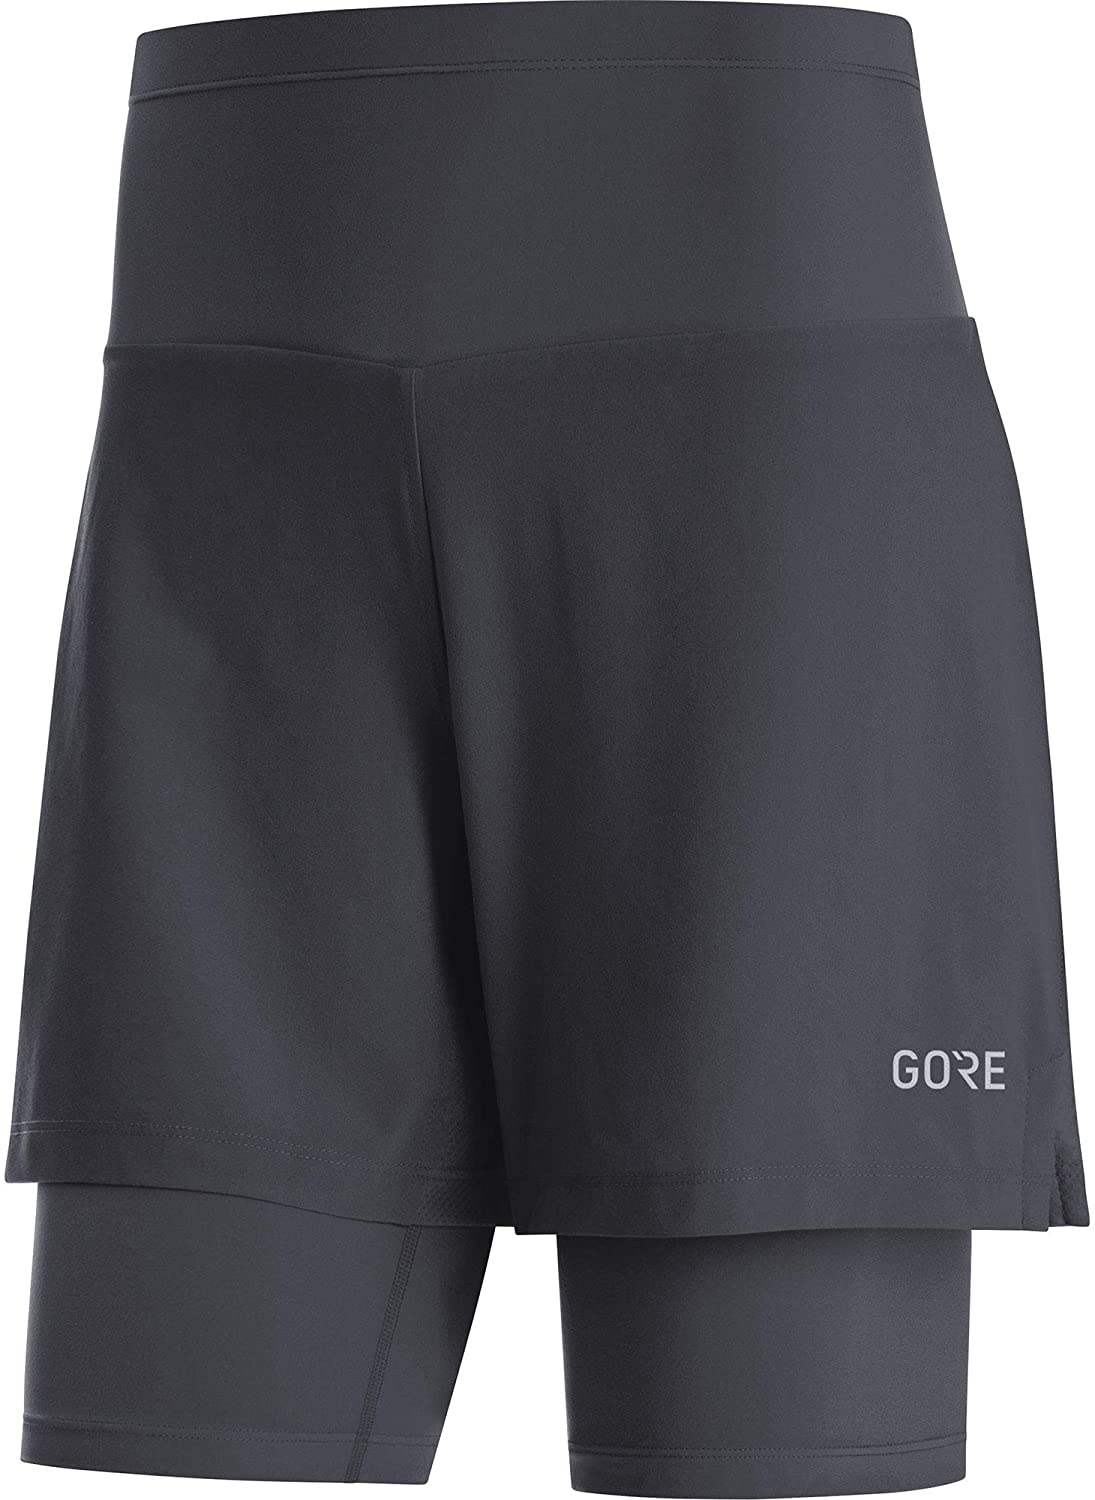 Gore Wear R5 2in1 Shorts - Løbeshort Damer